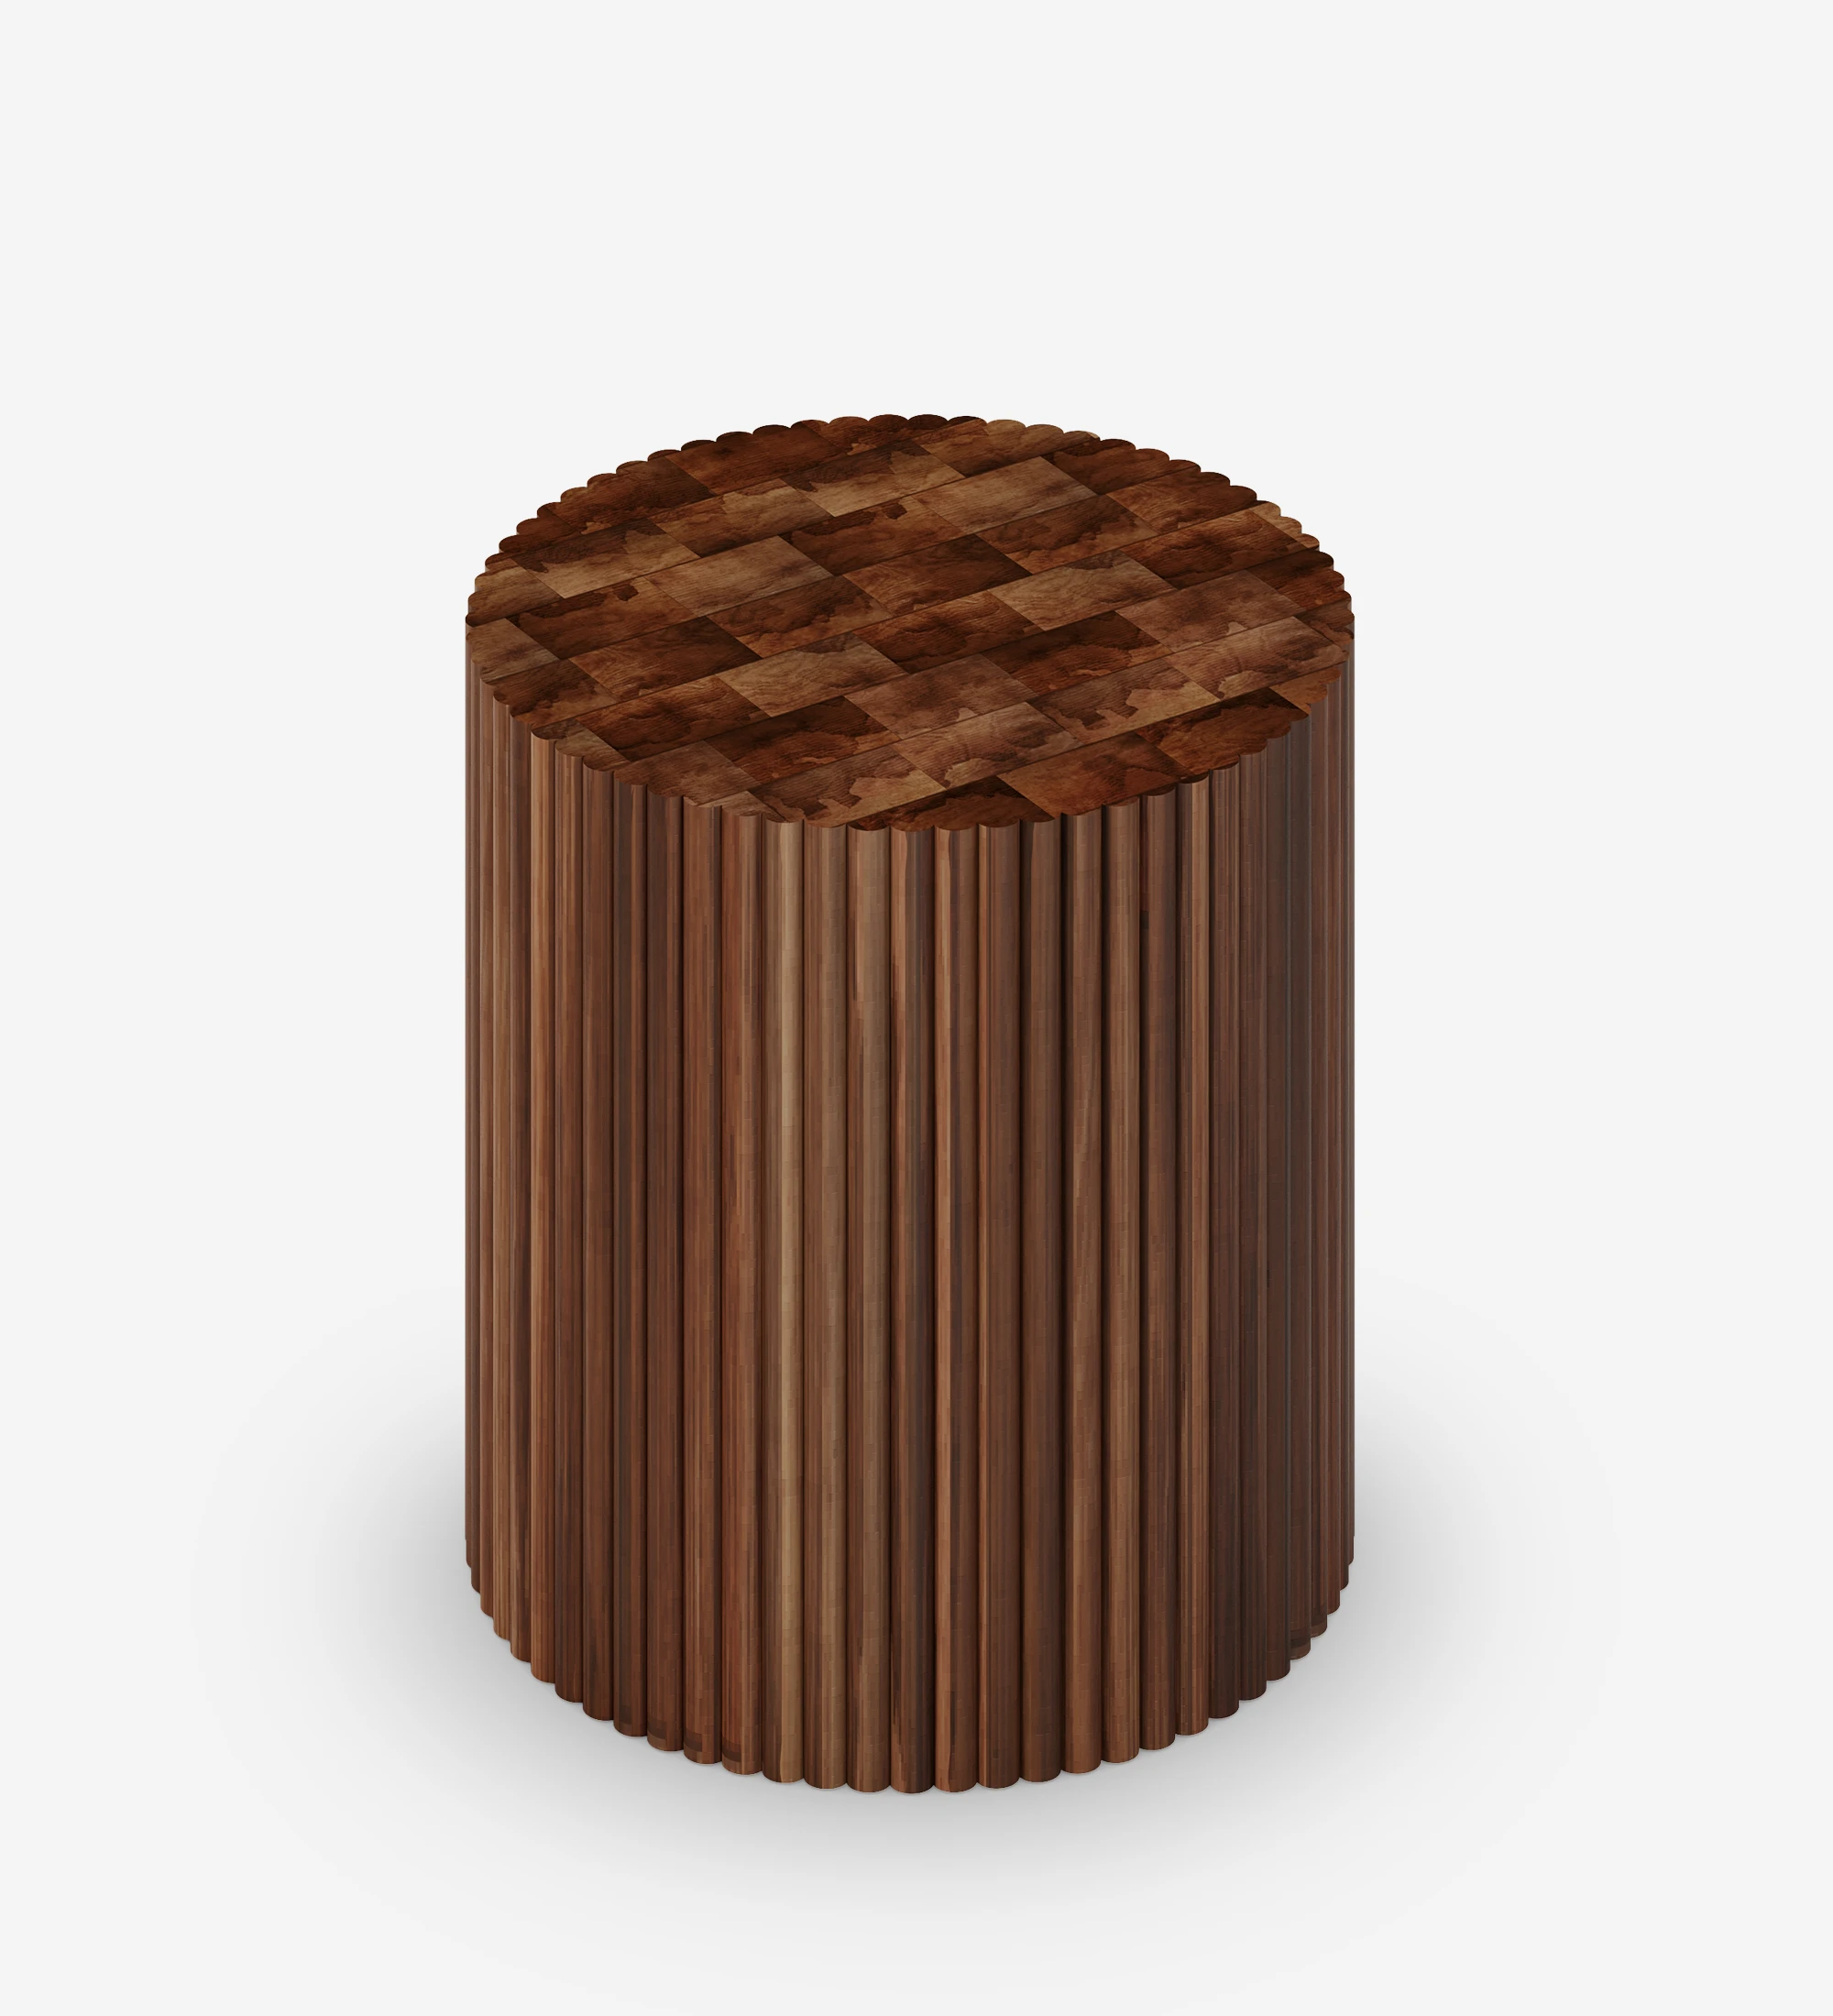 Mesa apoio Évora redonda en madera de nogal.